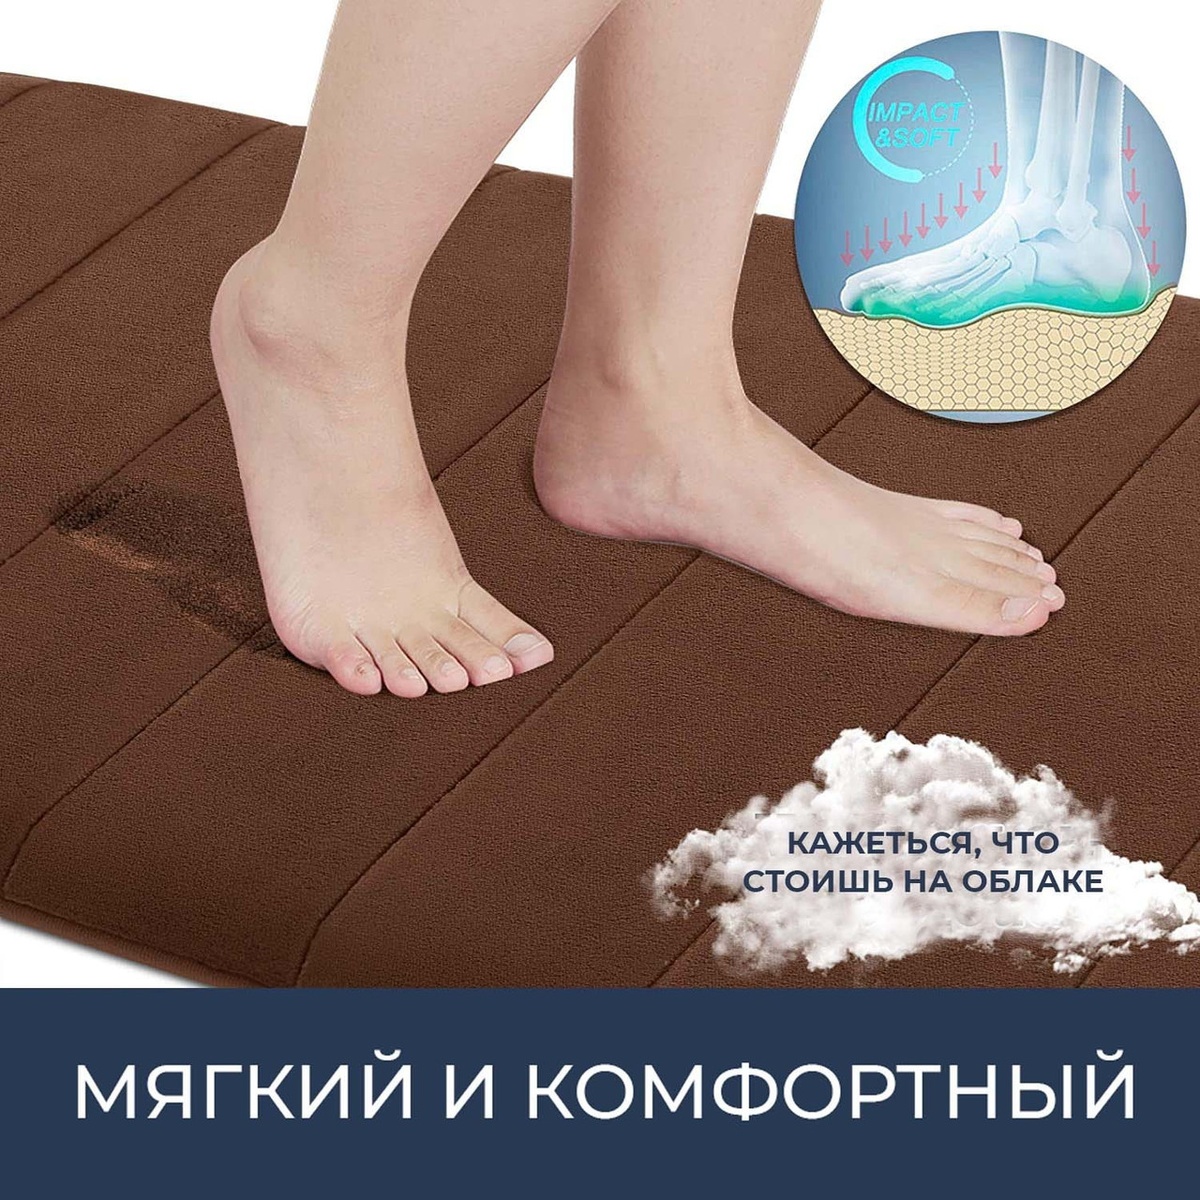 Набор ковриков для ванной AQUARIUS AQ-U1676599109 600x400мм коричневый